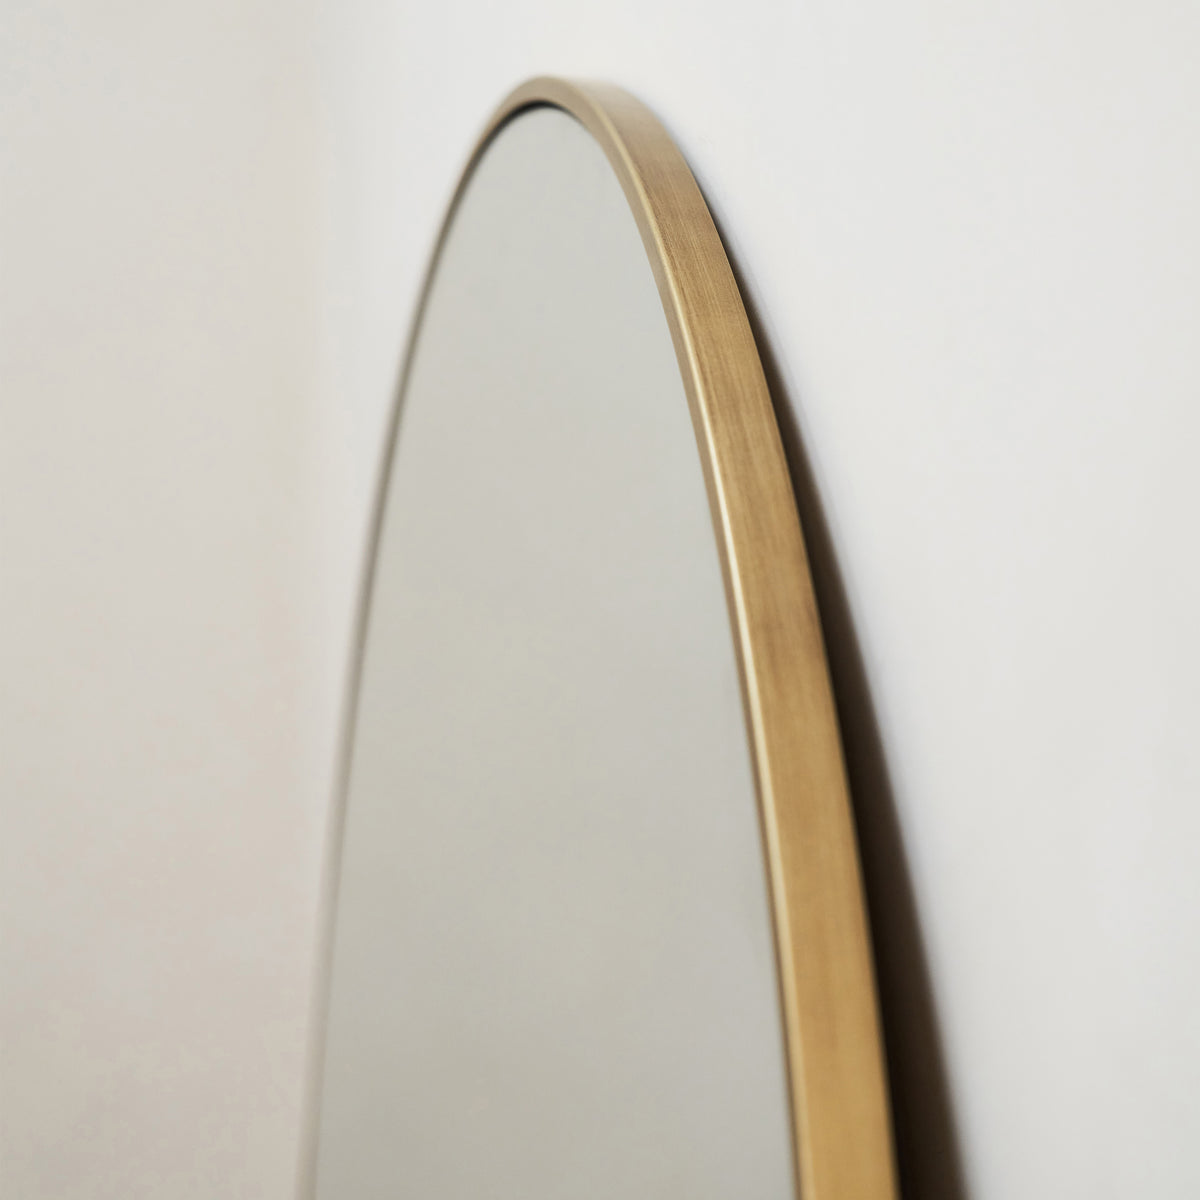 Liberty - Grand miroir à surmanteau en métal arqué doré 120 cm x 90 cm